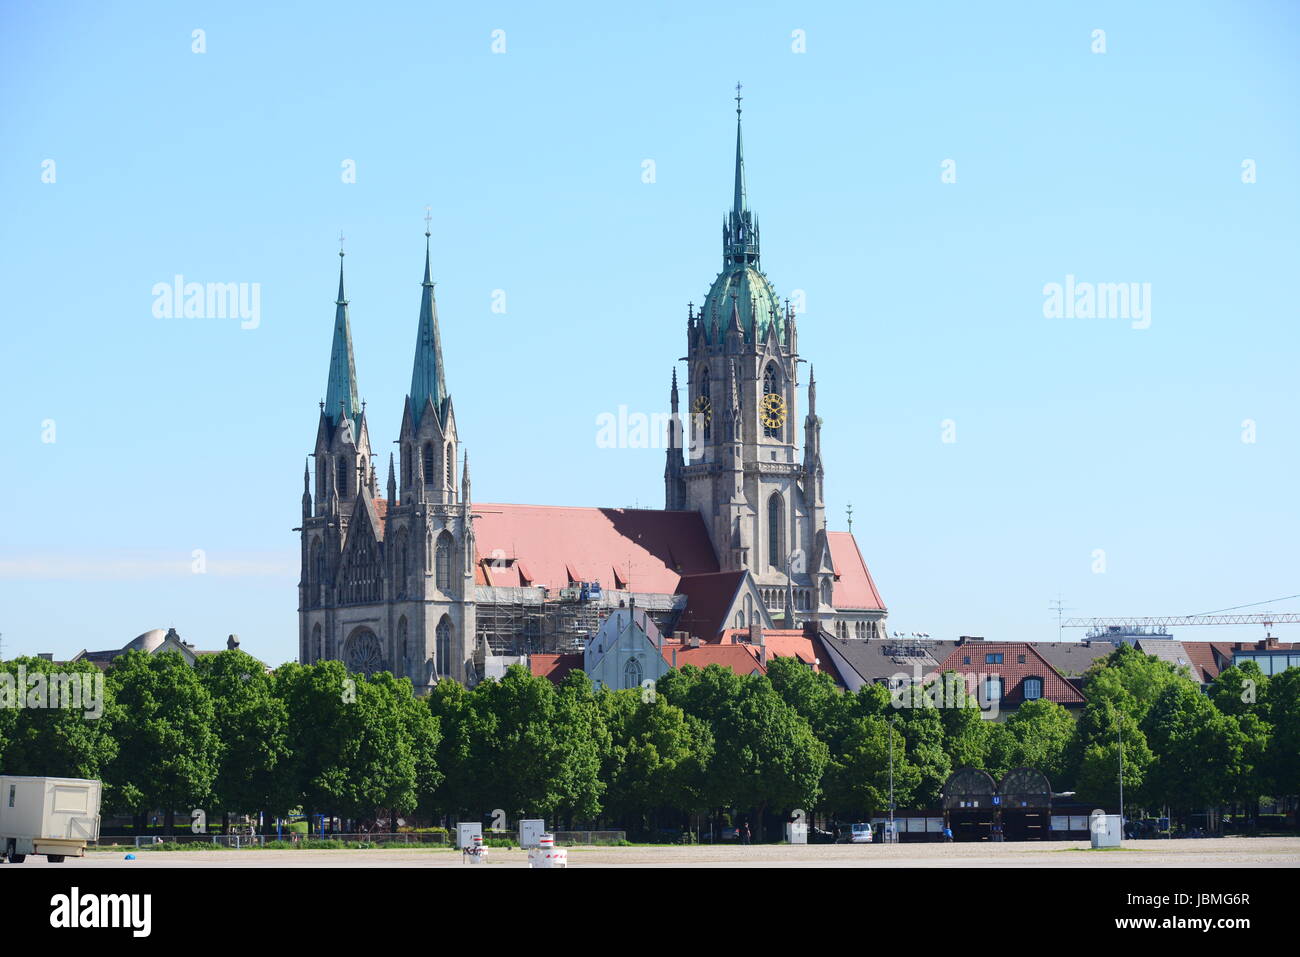 Pfarrkirche der ludwigsvorstadt in München sie wurde 1892 bis 1906 nach plänen von Georg von hauberrisser im neugotischen stil errichtet Foto Stock